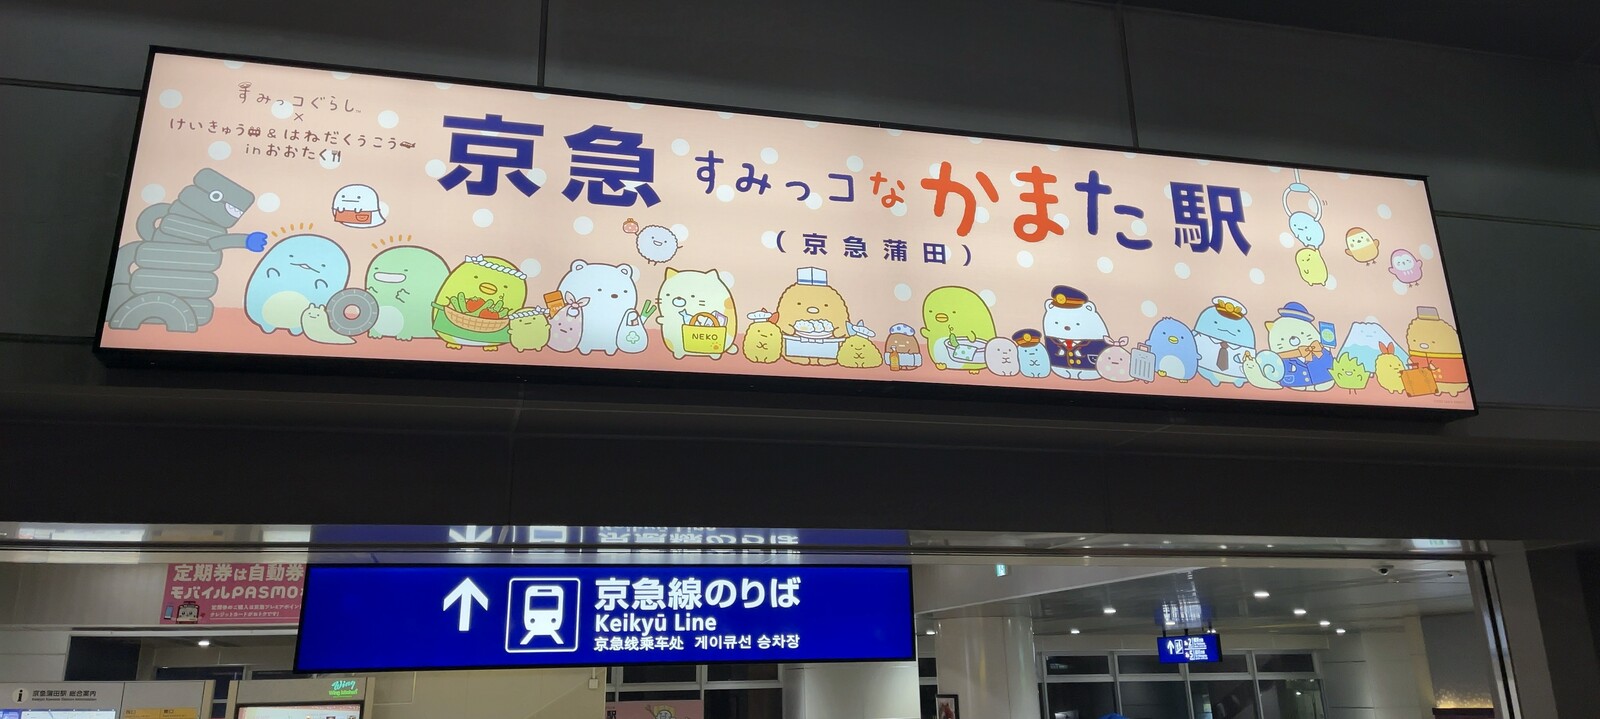 すみっコぐらしとコラボしている京急蒲田駅の写真